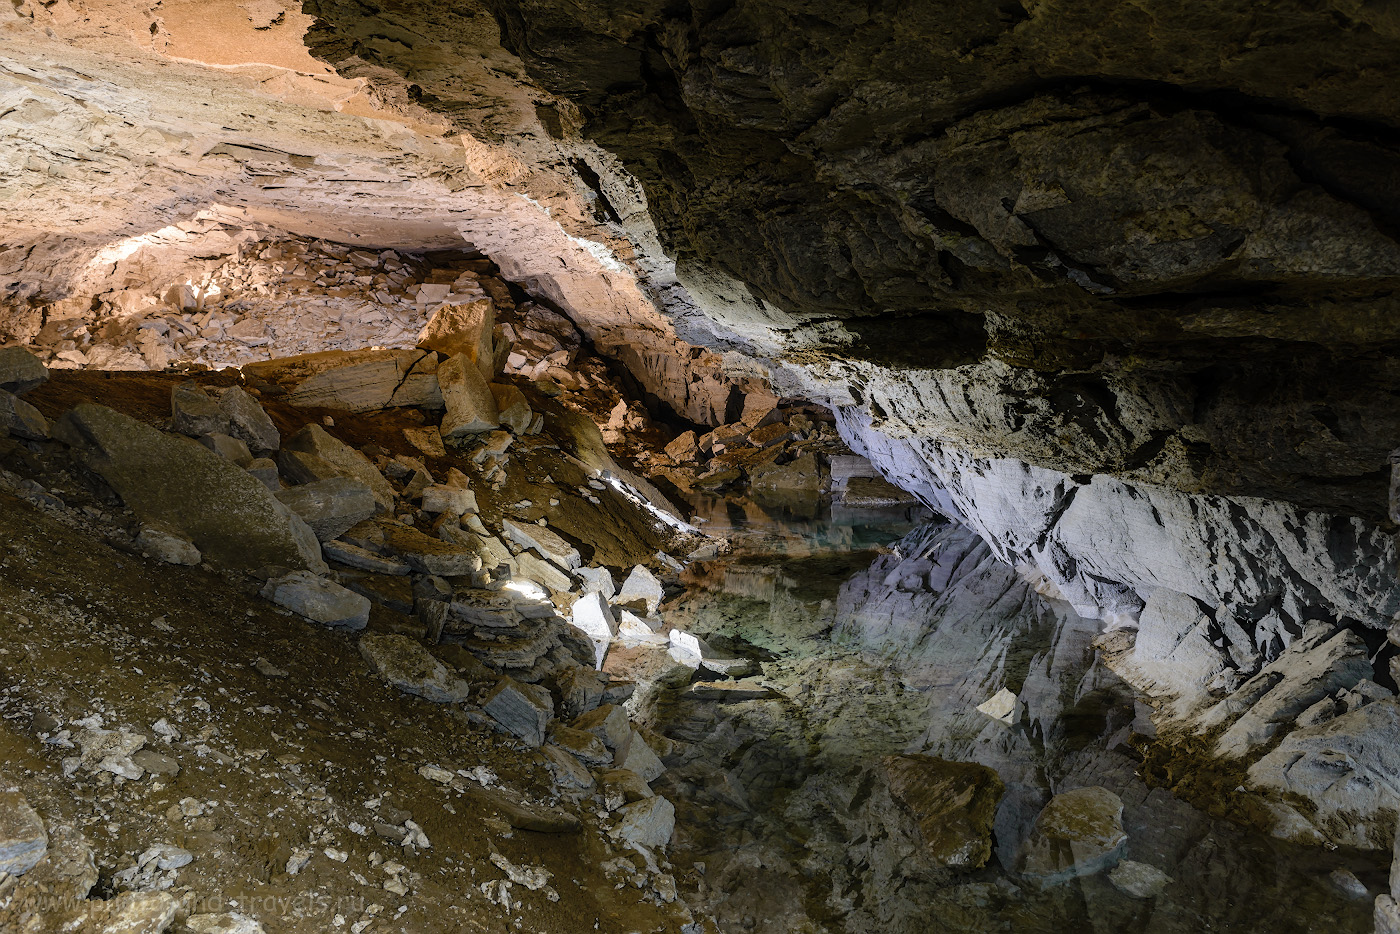 Фото 17. Один из гротов Кунгурской пещеры. Пятно с зеленоватым оттенком справа – подземное озеро. Их в этой каверне несколько, глубина достигает 3-х метров. Настройки: 4.0, +0.33, 8.0, 320, 24.